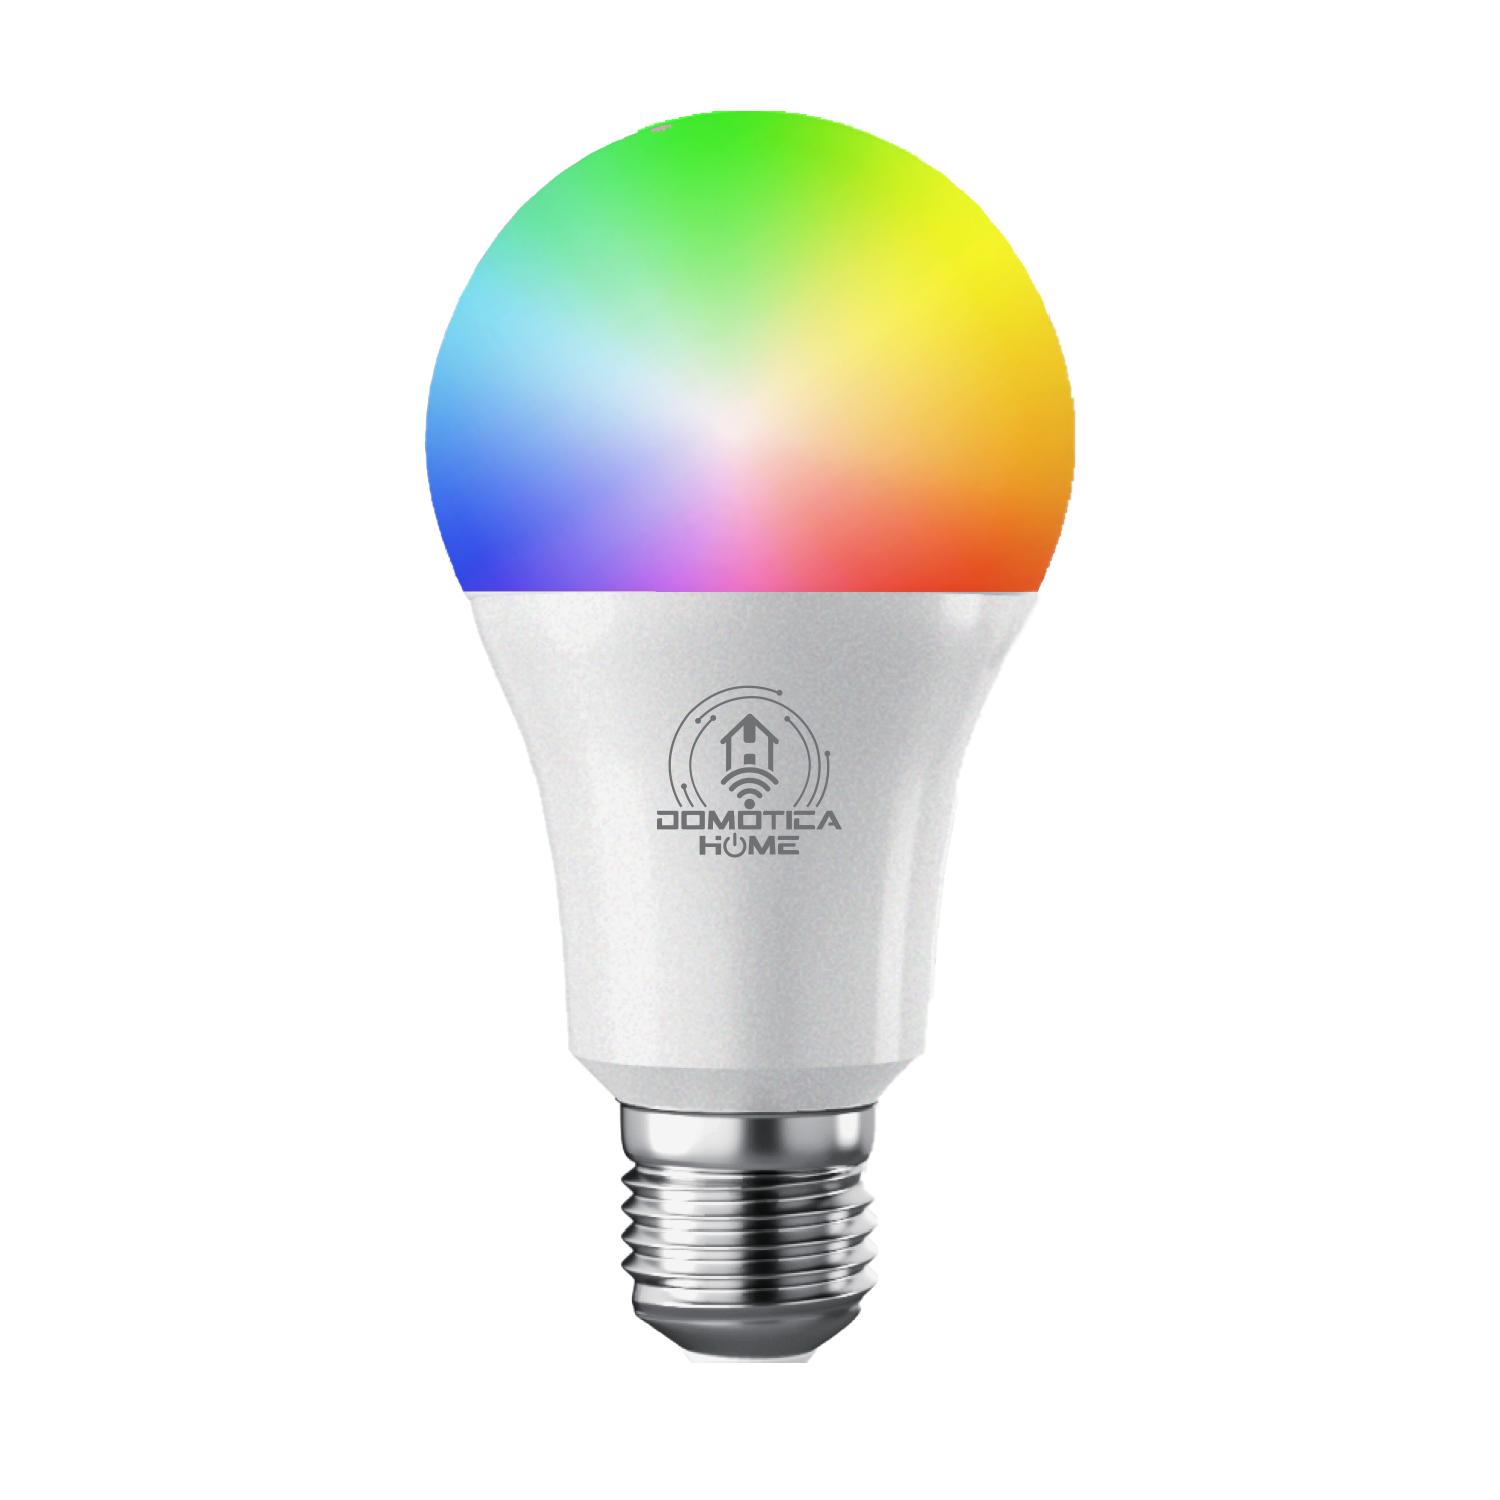 Foco Inteligente WiFi, Multicolor + Luz Blanca Fría y Cálida (RGB